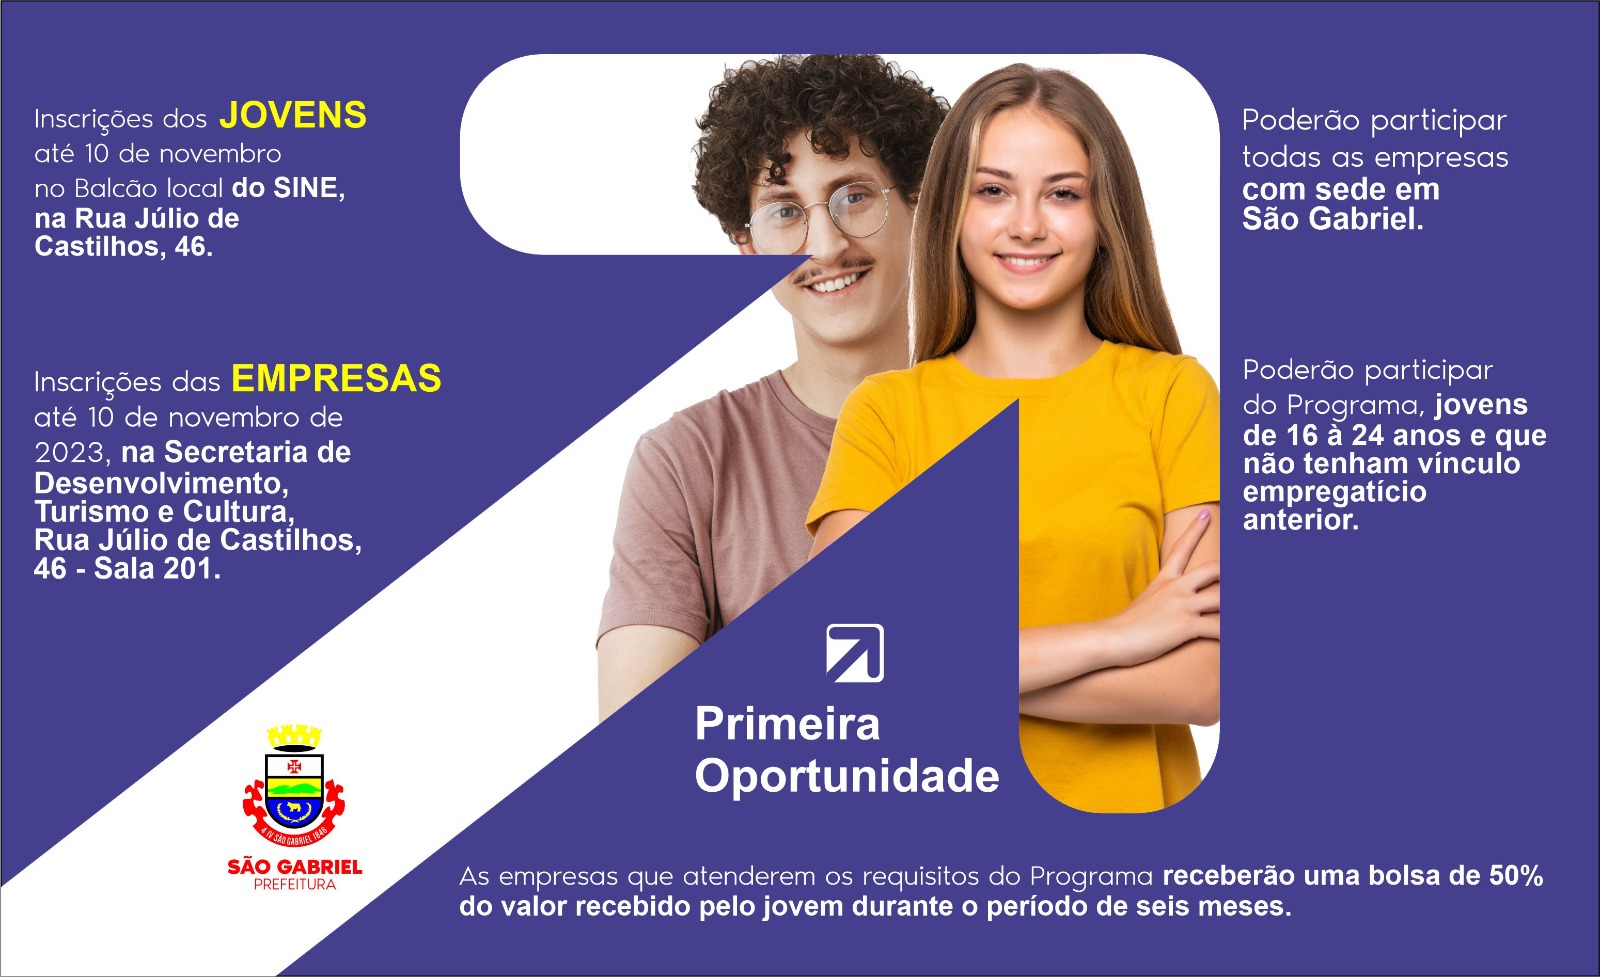 Programa Primeira Oportunidade - Prefeitura de São Gabriel